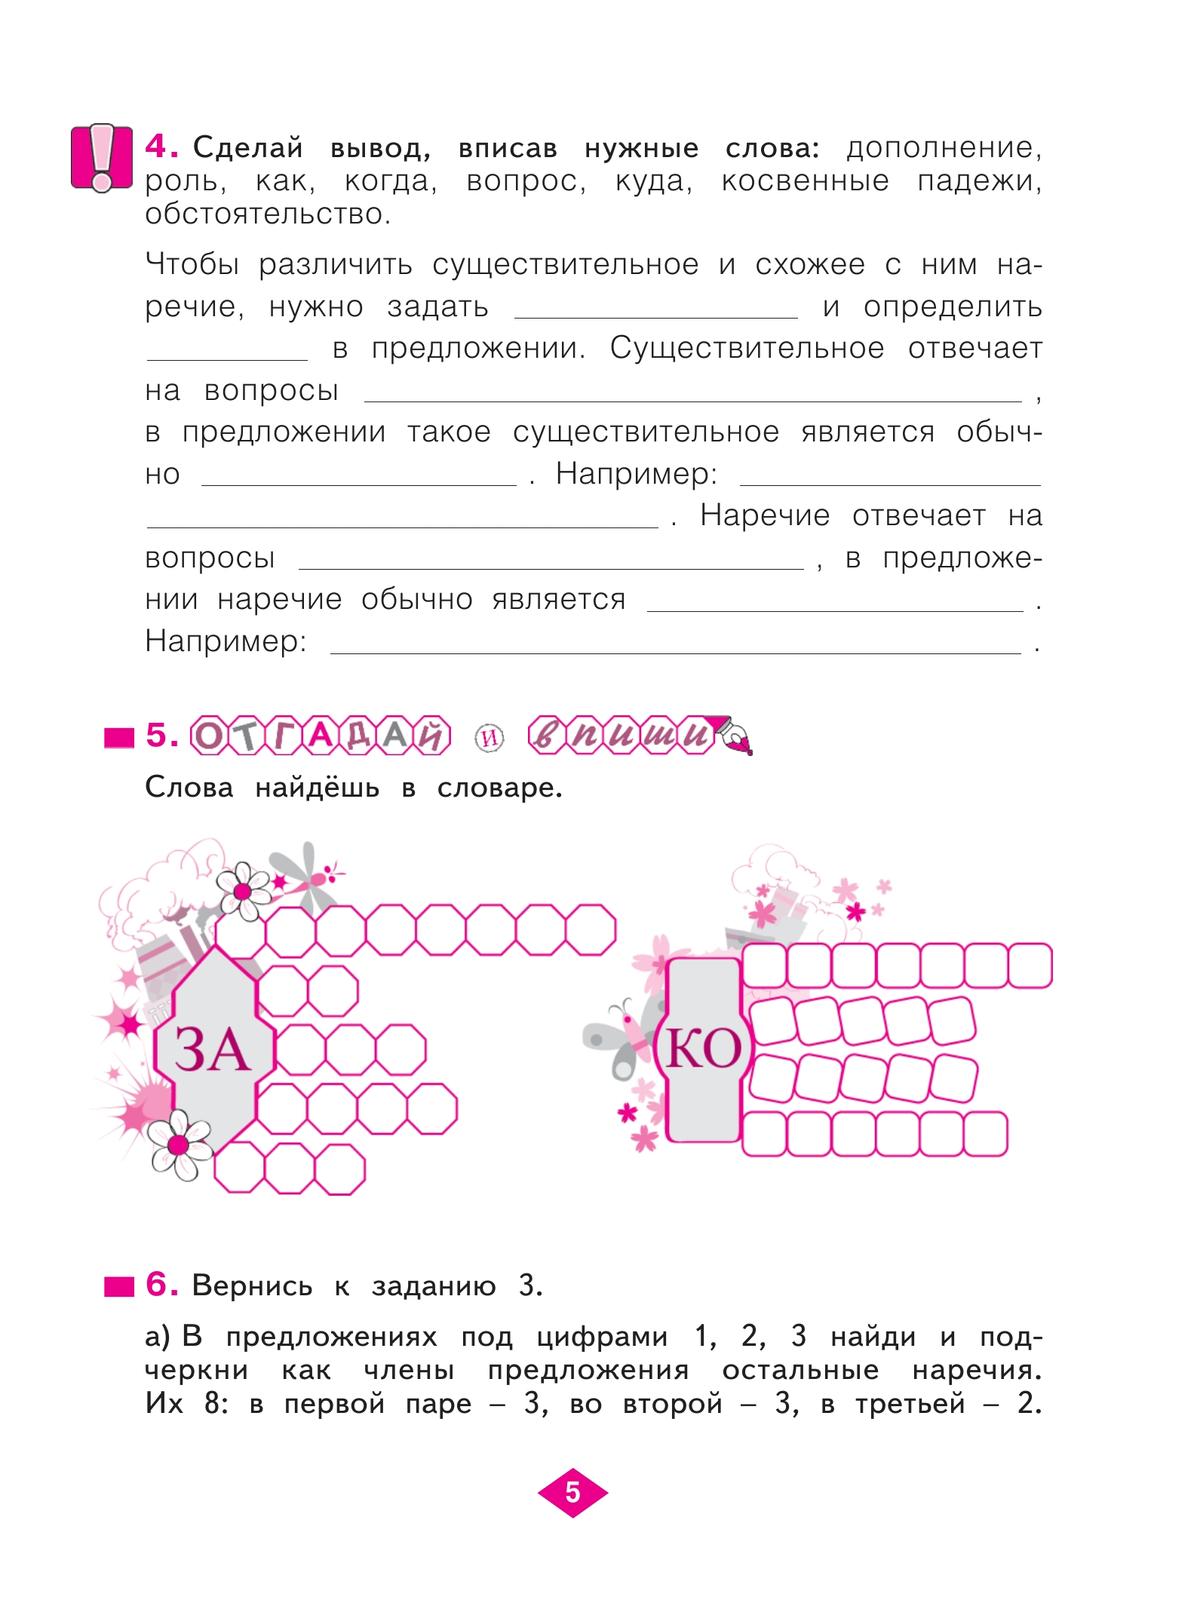 Русский язык. Рабочая тетрадь. 4 класс. В 4-х частях. Часть 4 5